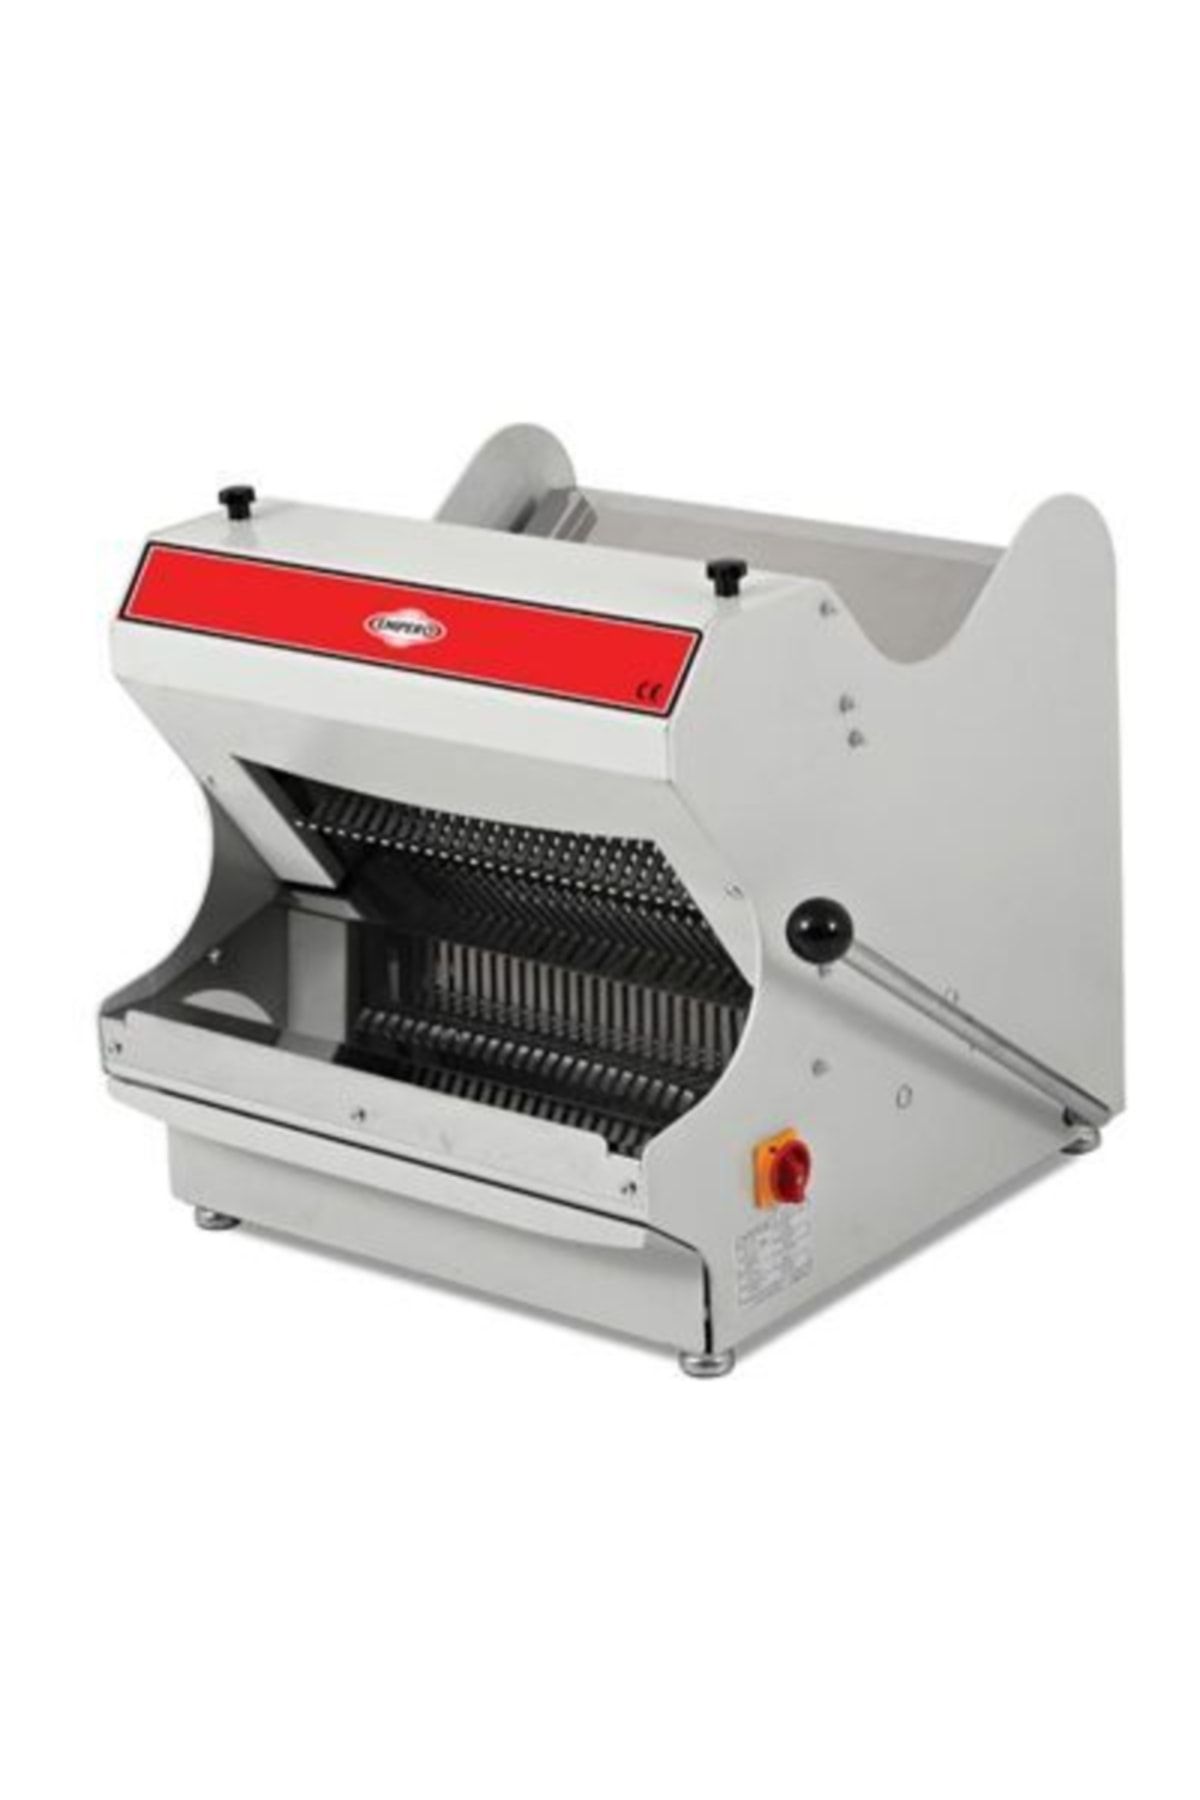 Empero Set Üstü Ekmek Dilimleme Makinesi, 13 Mm